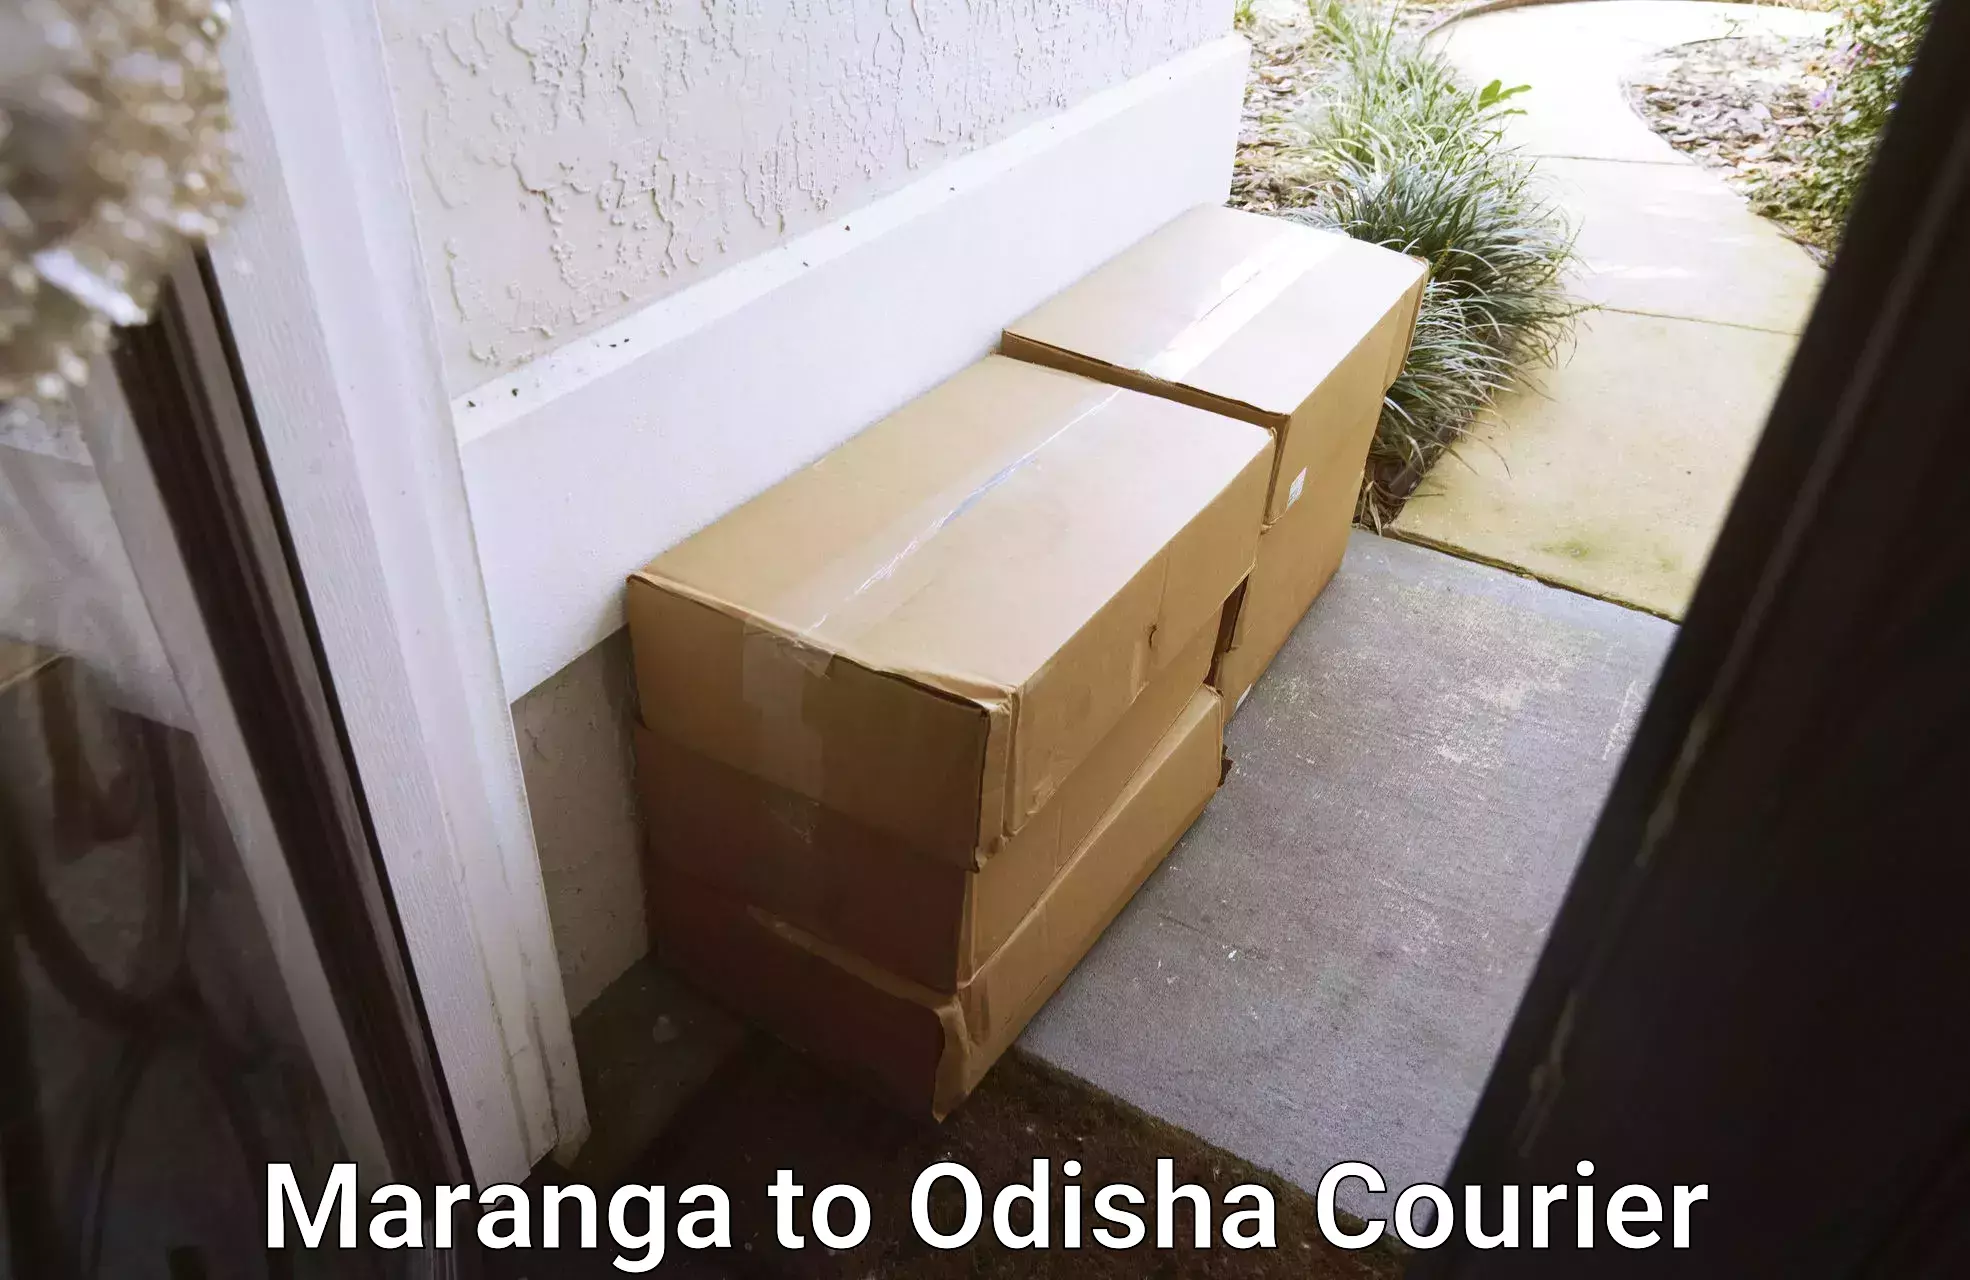 Professional home movers Maranga to Karanjia